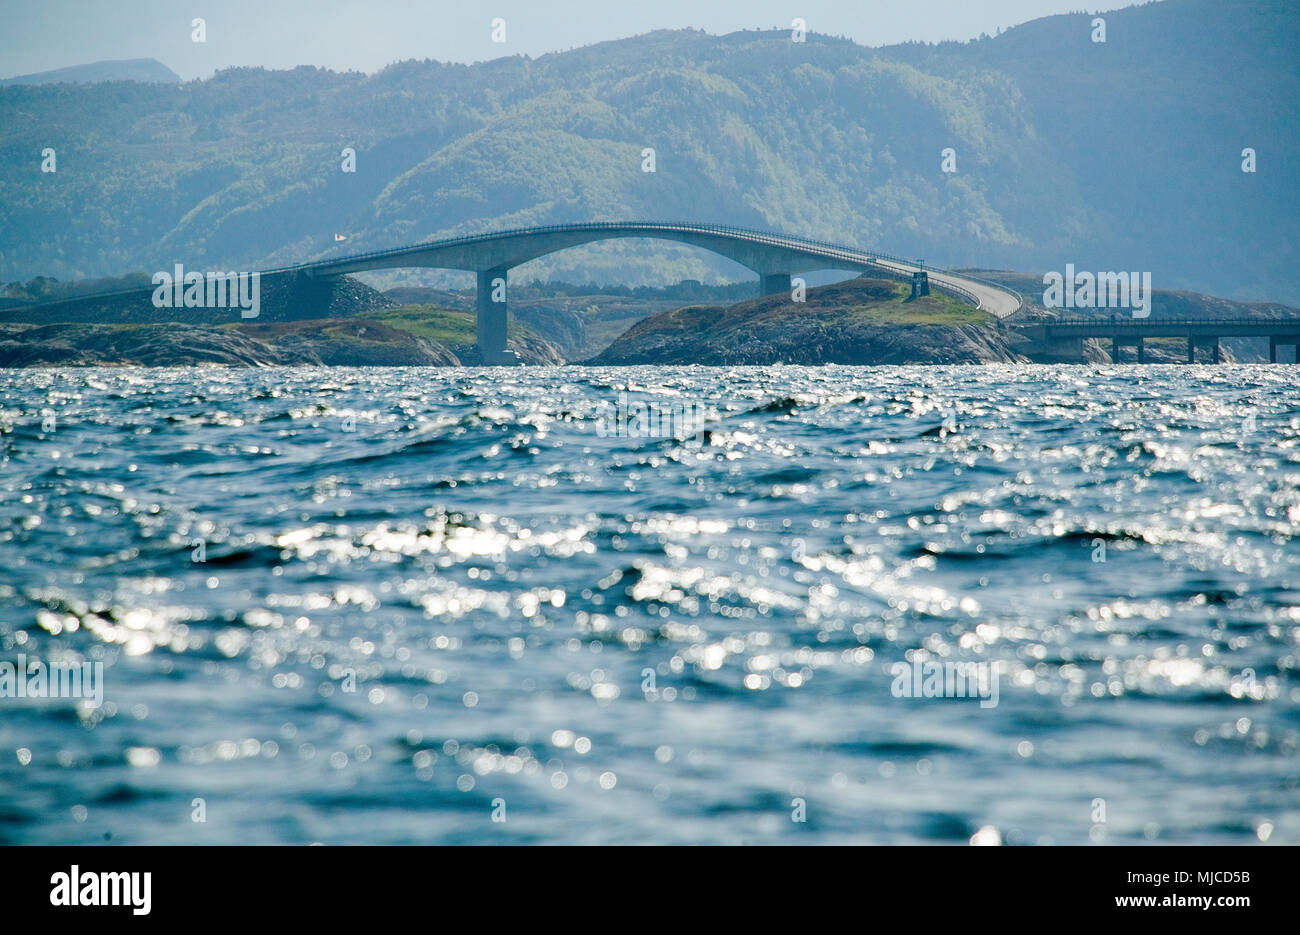 Brücke der Atlantikstraße in Mittelnorwegen Foto Stock